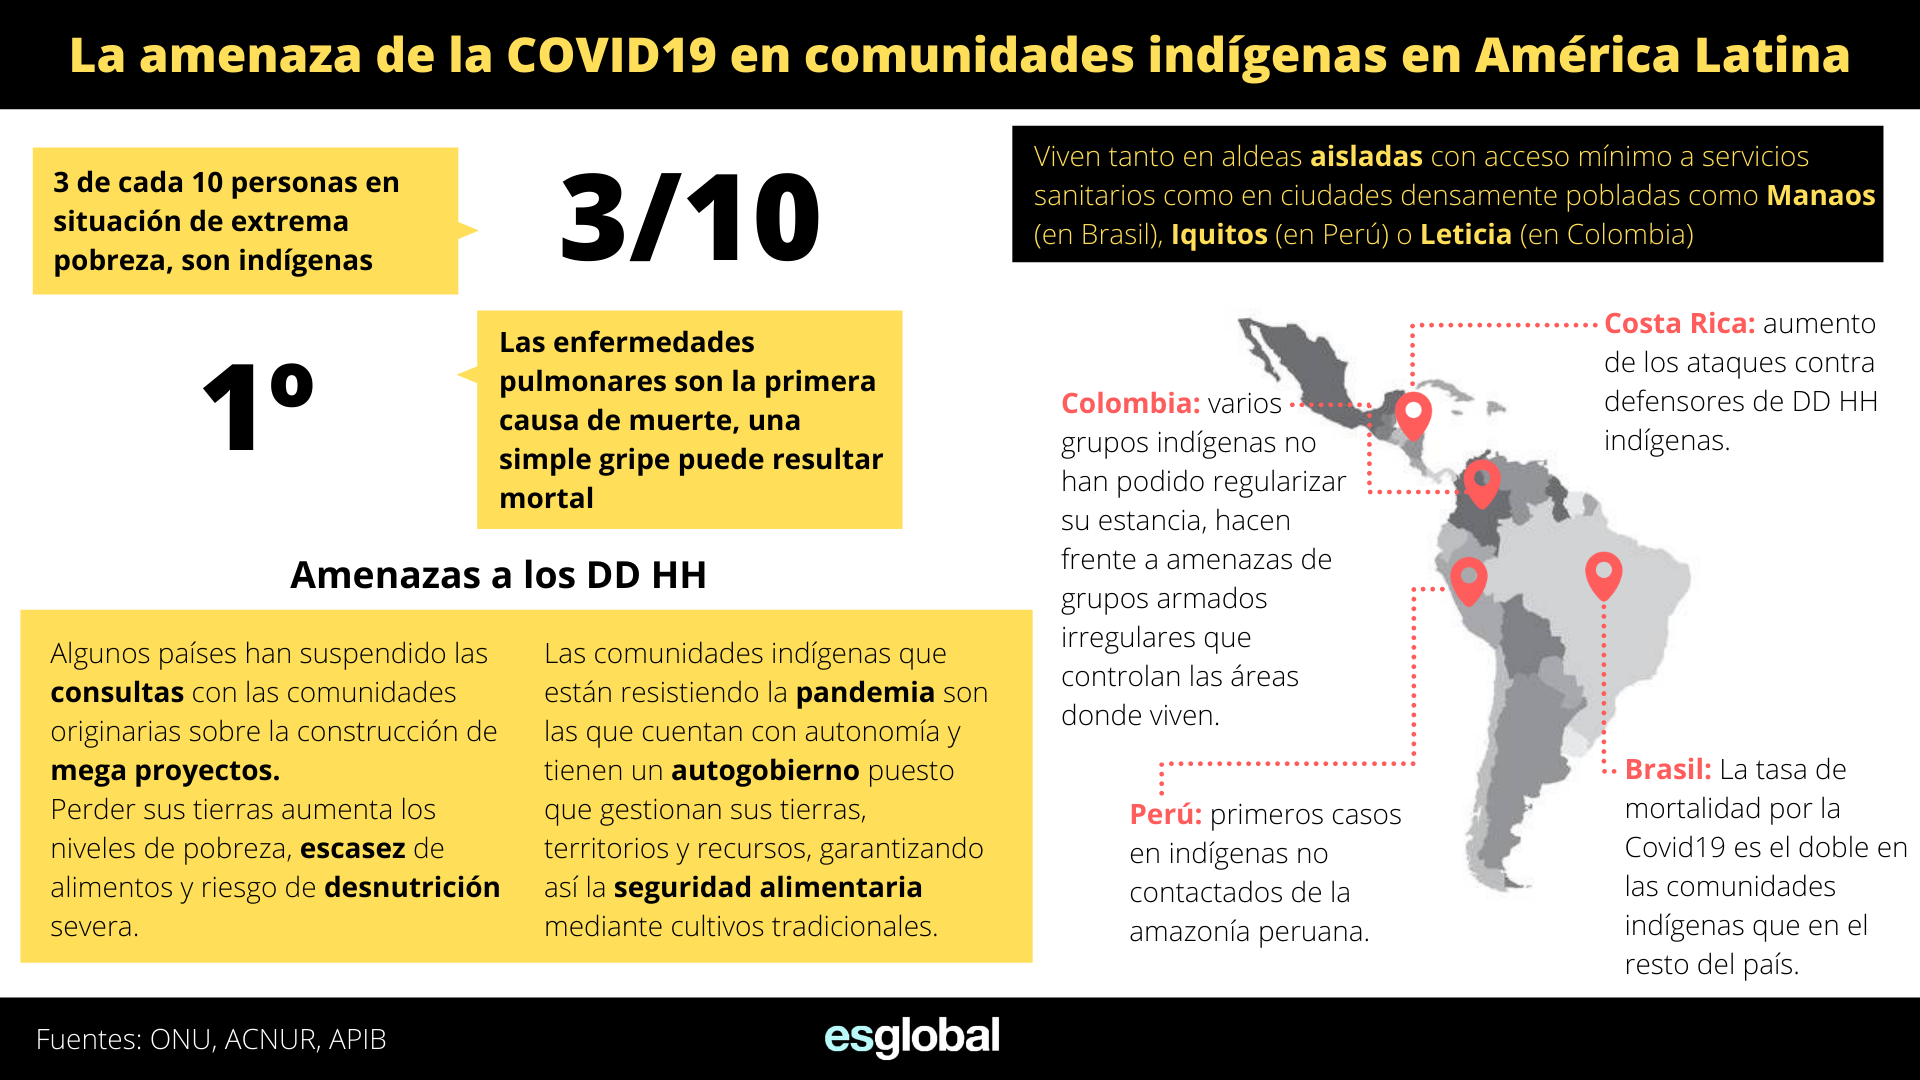 La amenaza del COVID19 en comunidades indígenas en América Latina